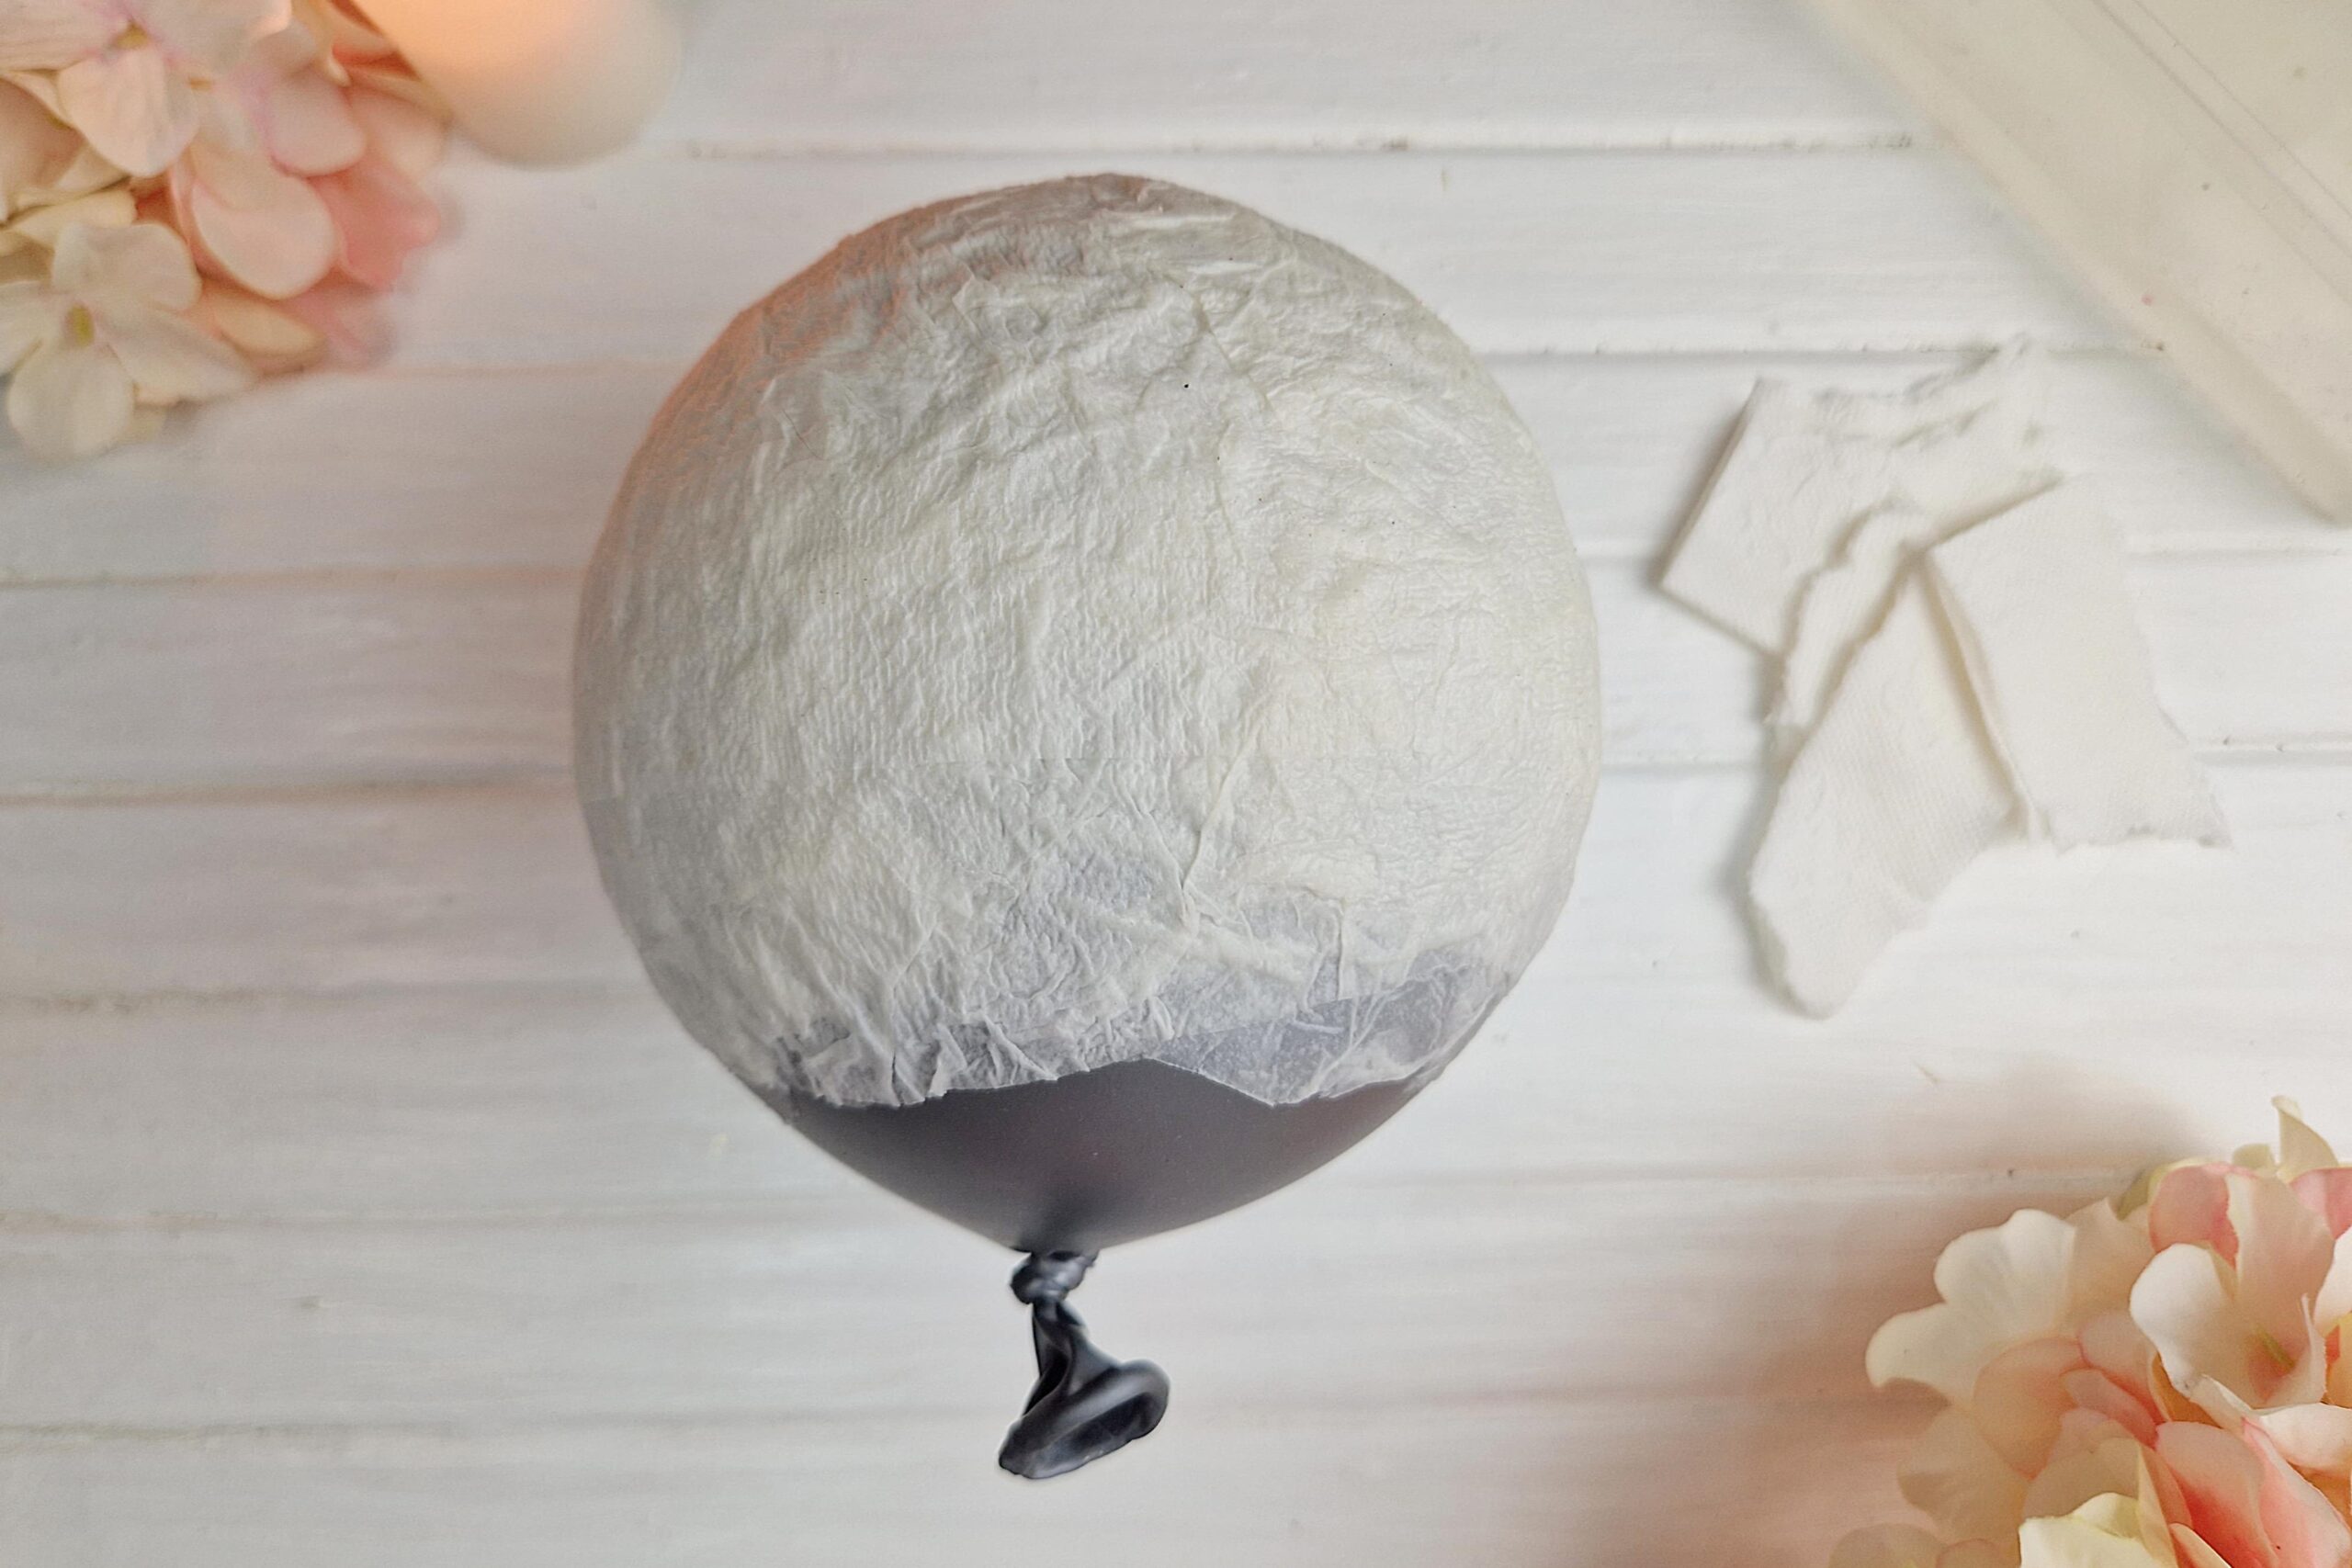 Die Bastelanleitung zeigt wie ein Luftballon mit Klopapier belegt wird, um daraus eine DIY Pilzlampe mit Blumen daraus zu basteln.